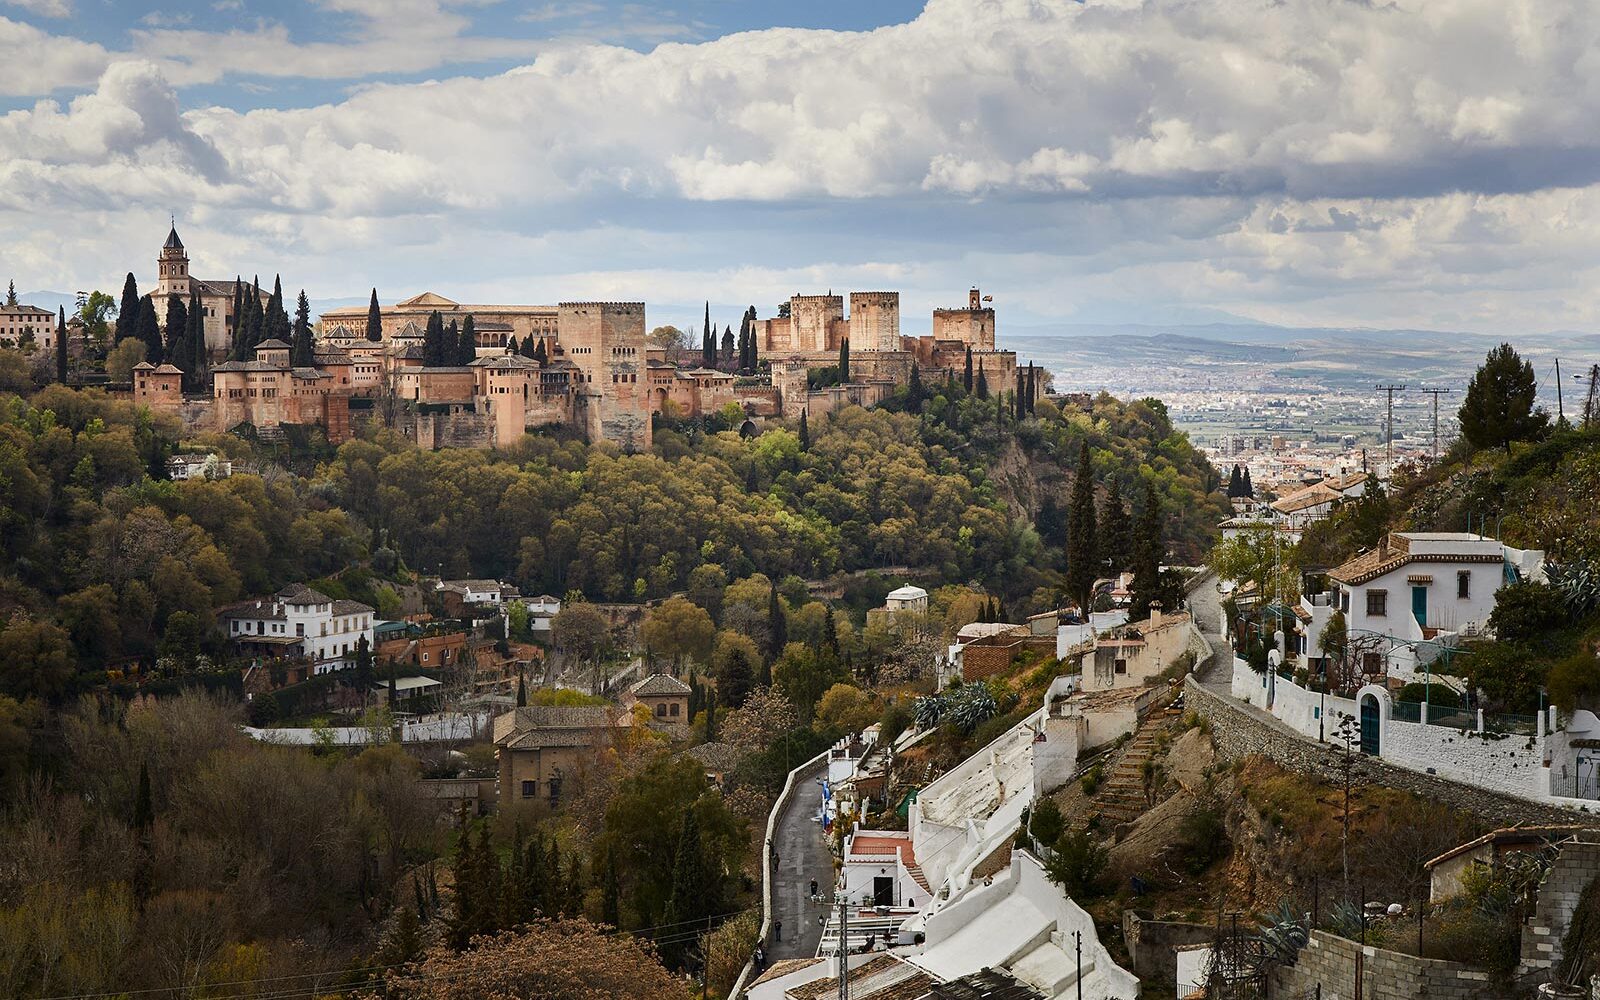 Alhambra i Granda: Paladset du skal se før du dør